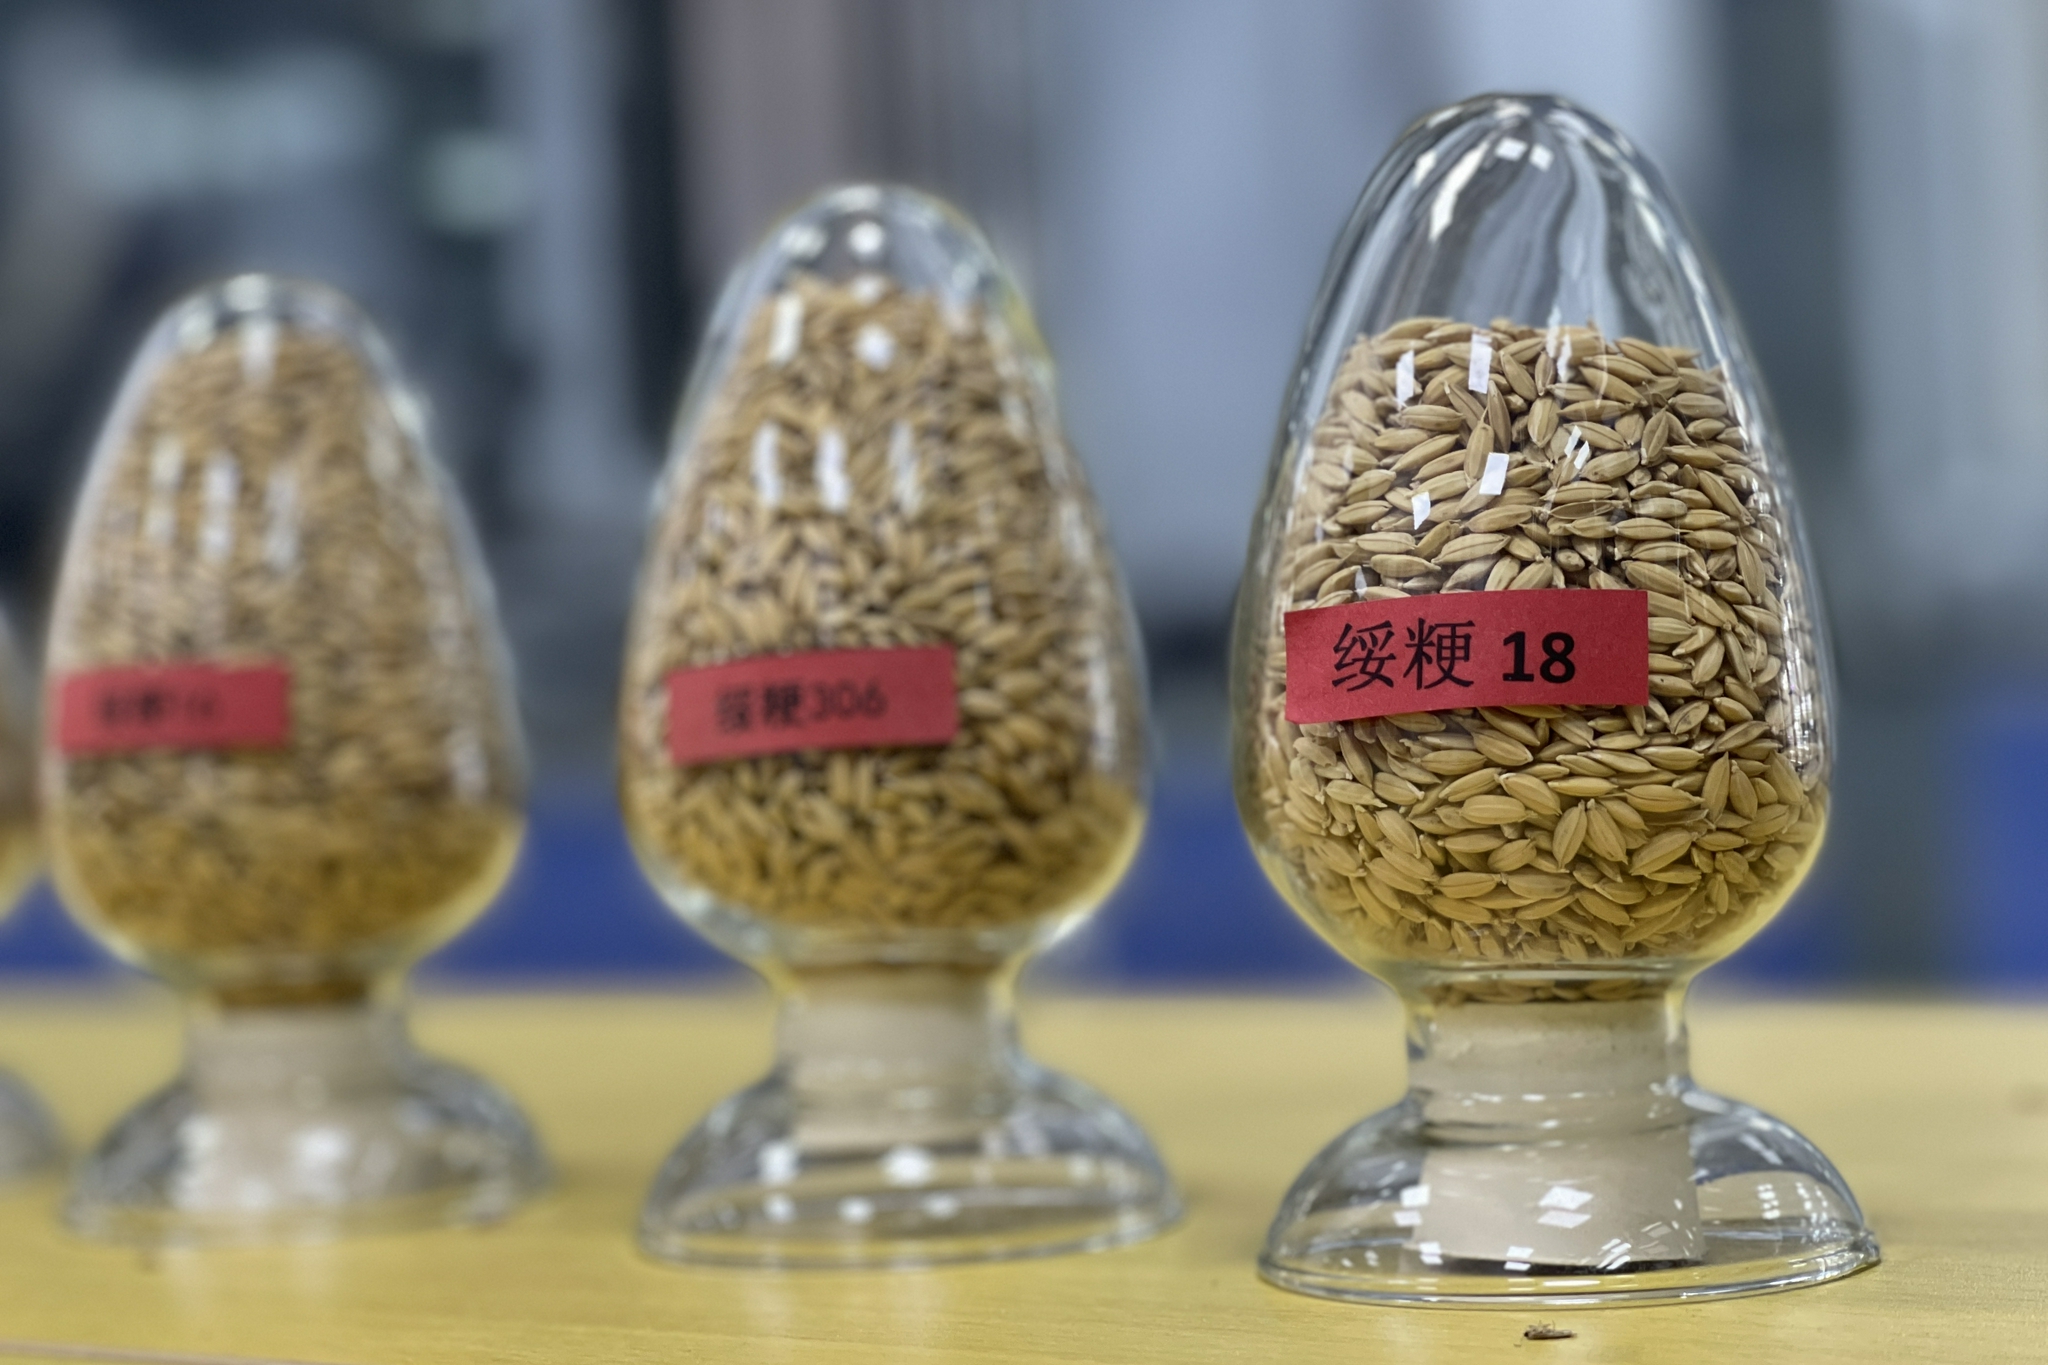 龙绥199水稻品种图片